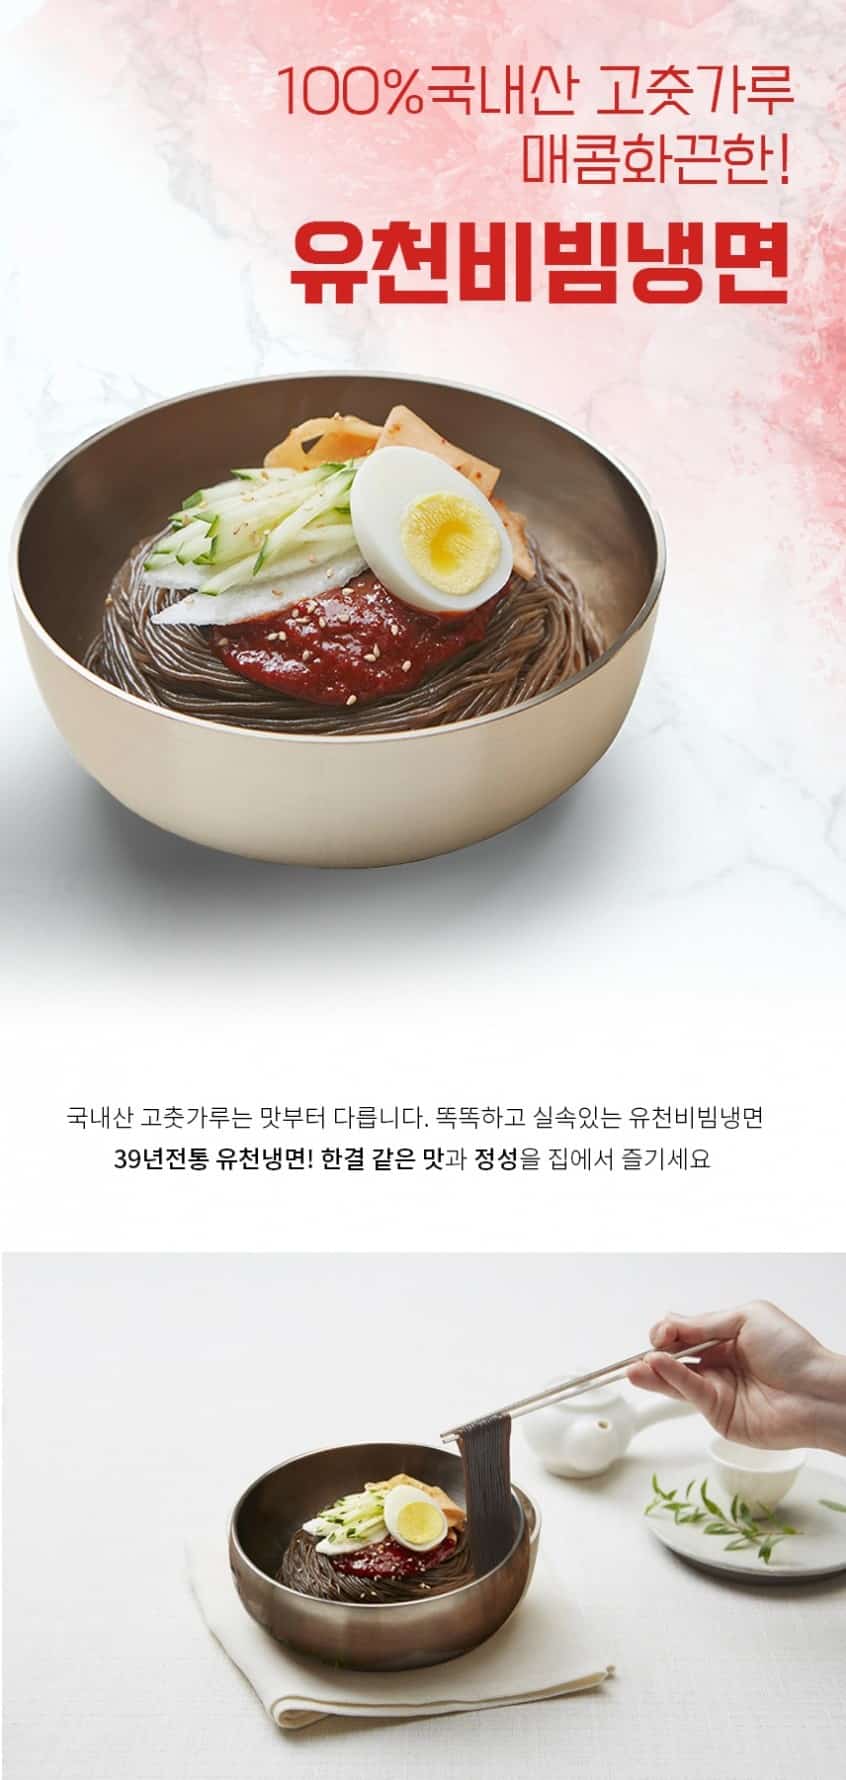 韓國食品-[You Cheon] Spicy Mix Noodle 1365g